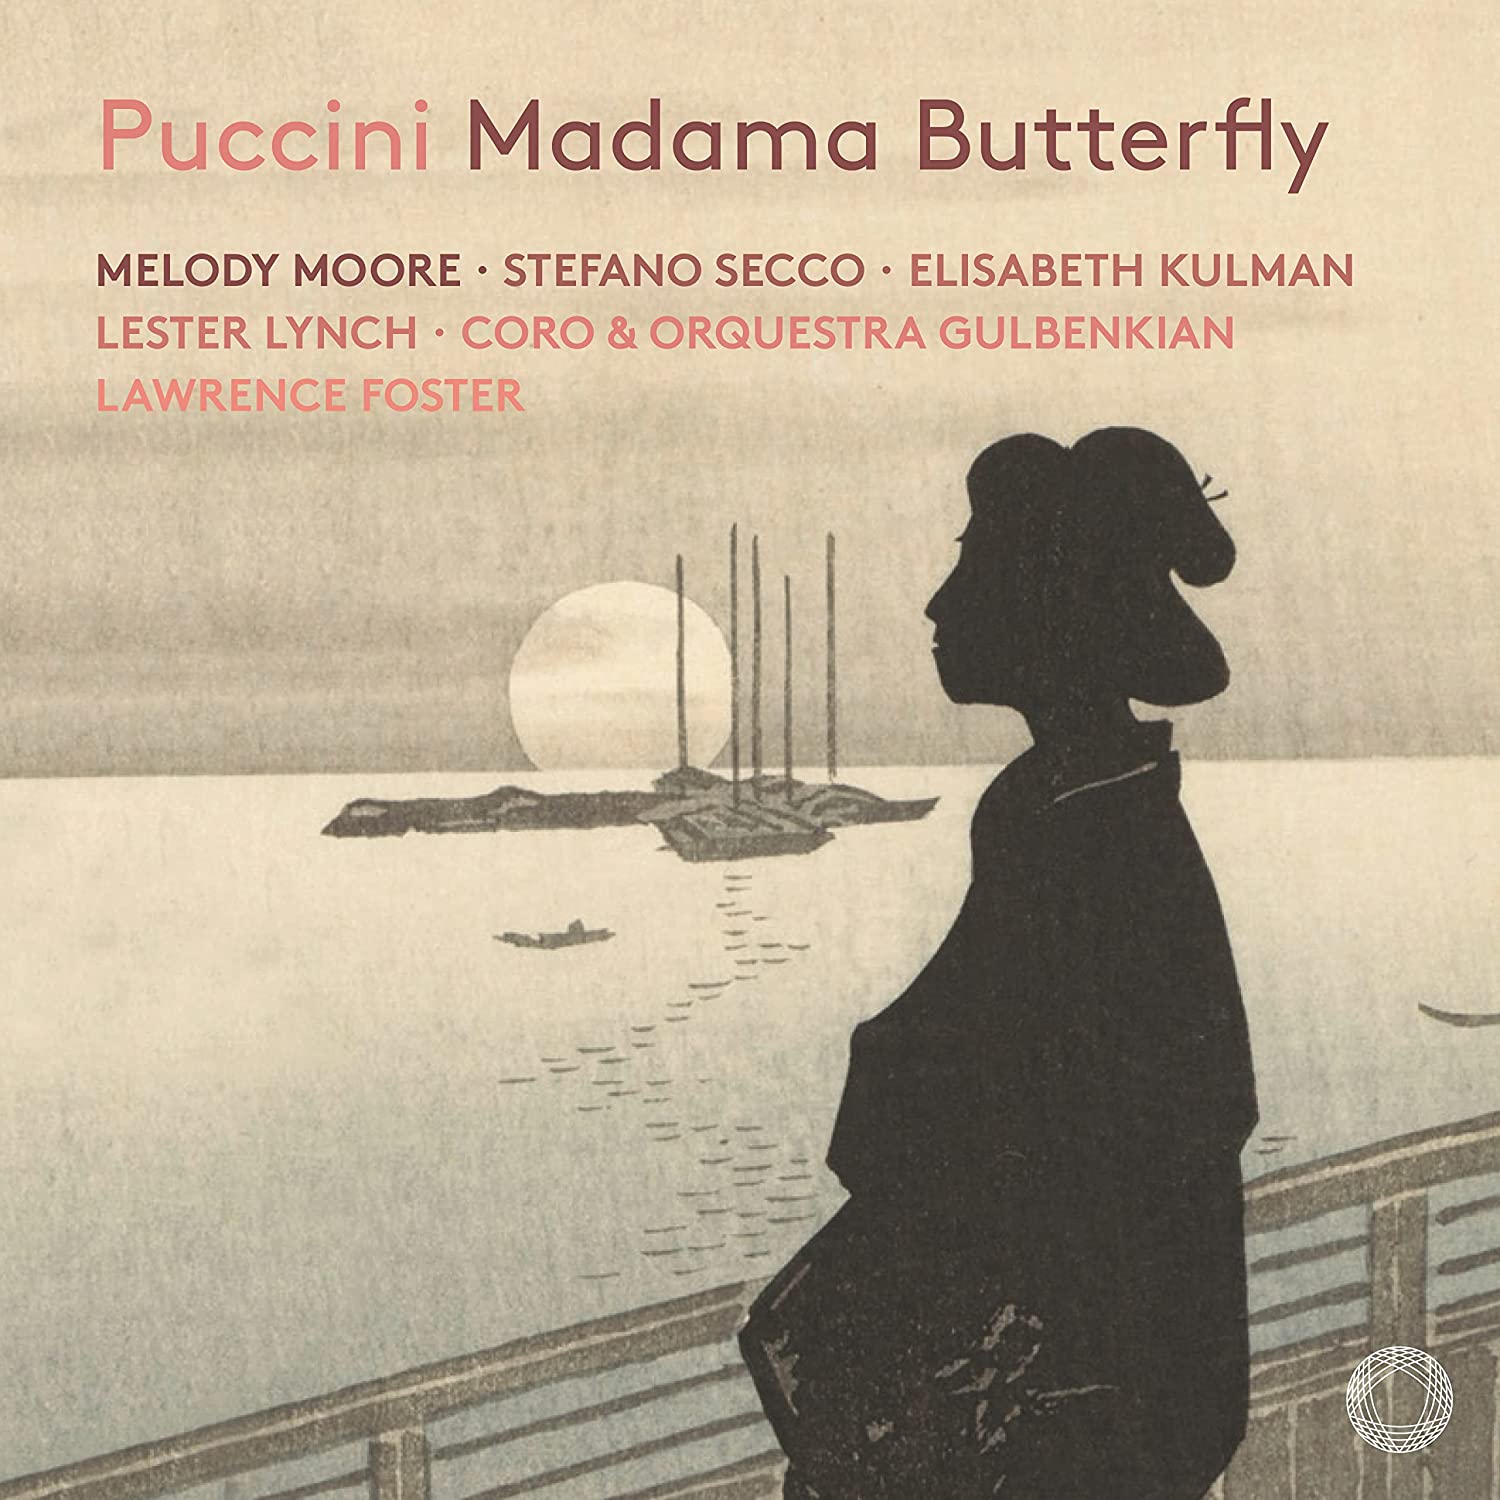 Audio Cd Giacomo Puccini - Madama Butterfly (2 Cd) NUOVO SIGILLATO, EDIZIONE DEL 18/11/2021 SUBITO DISPONIBILE